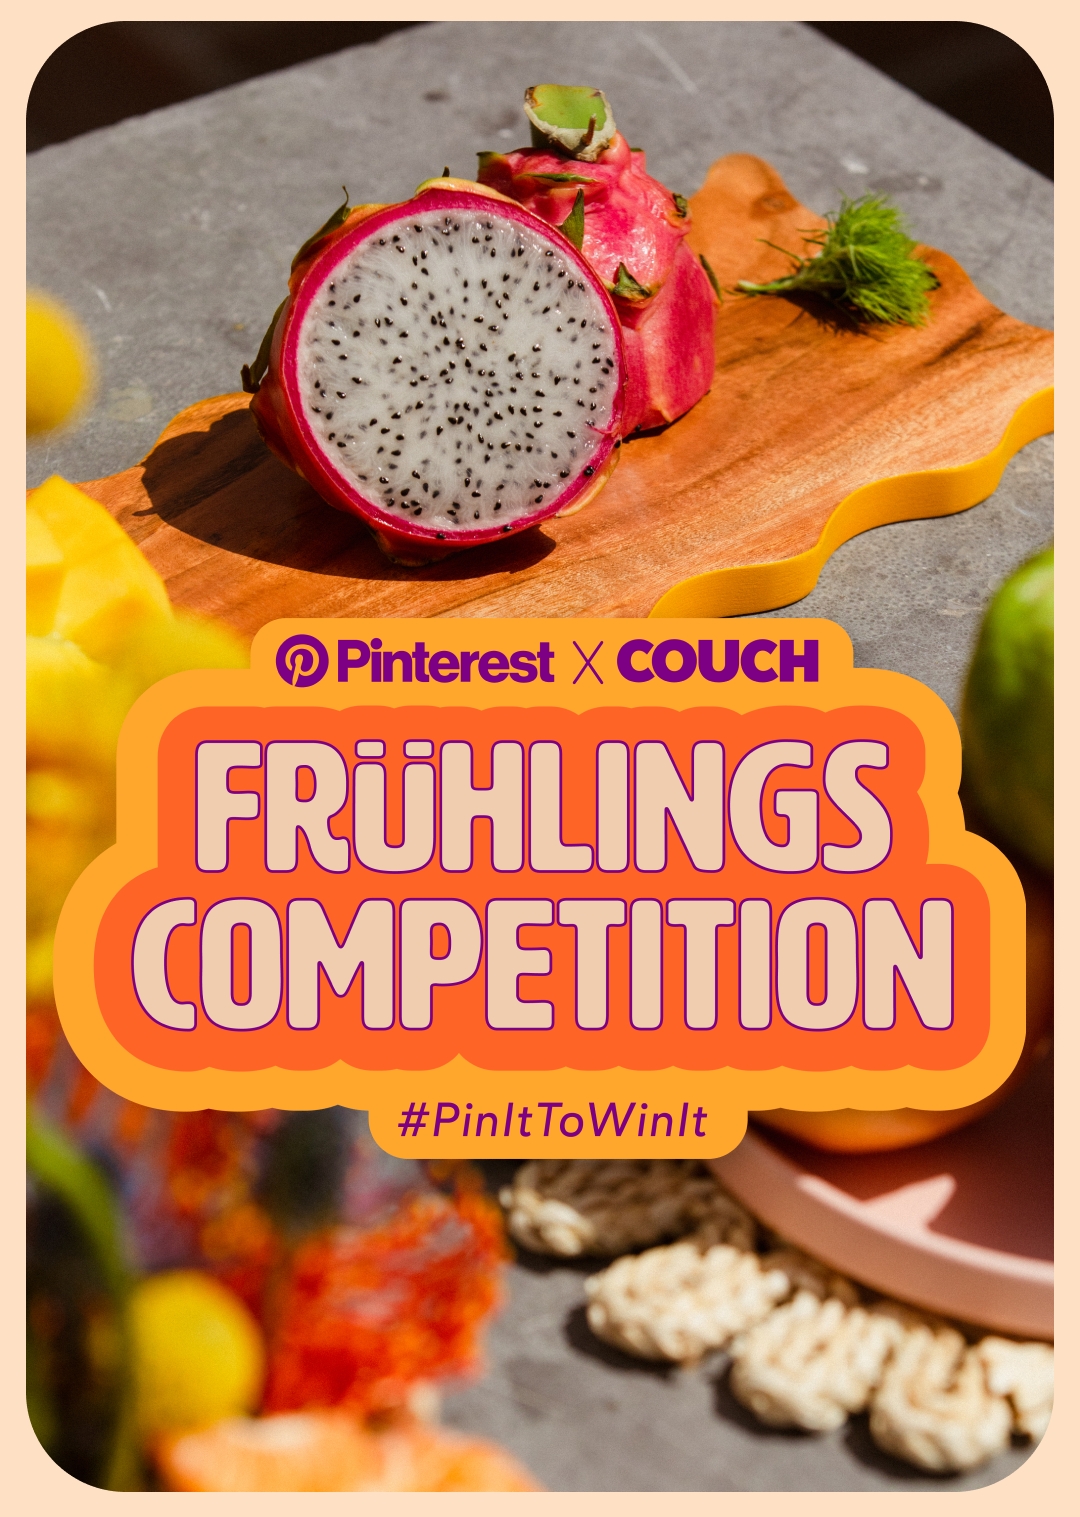 Heute startet unsere Pinterest Frühlings-Competition! 🧡 Klick auf den Hashtag #PinItToWinIt für alle Infos! 📌